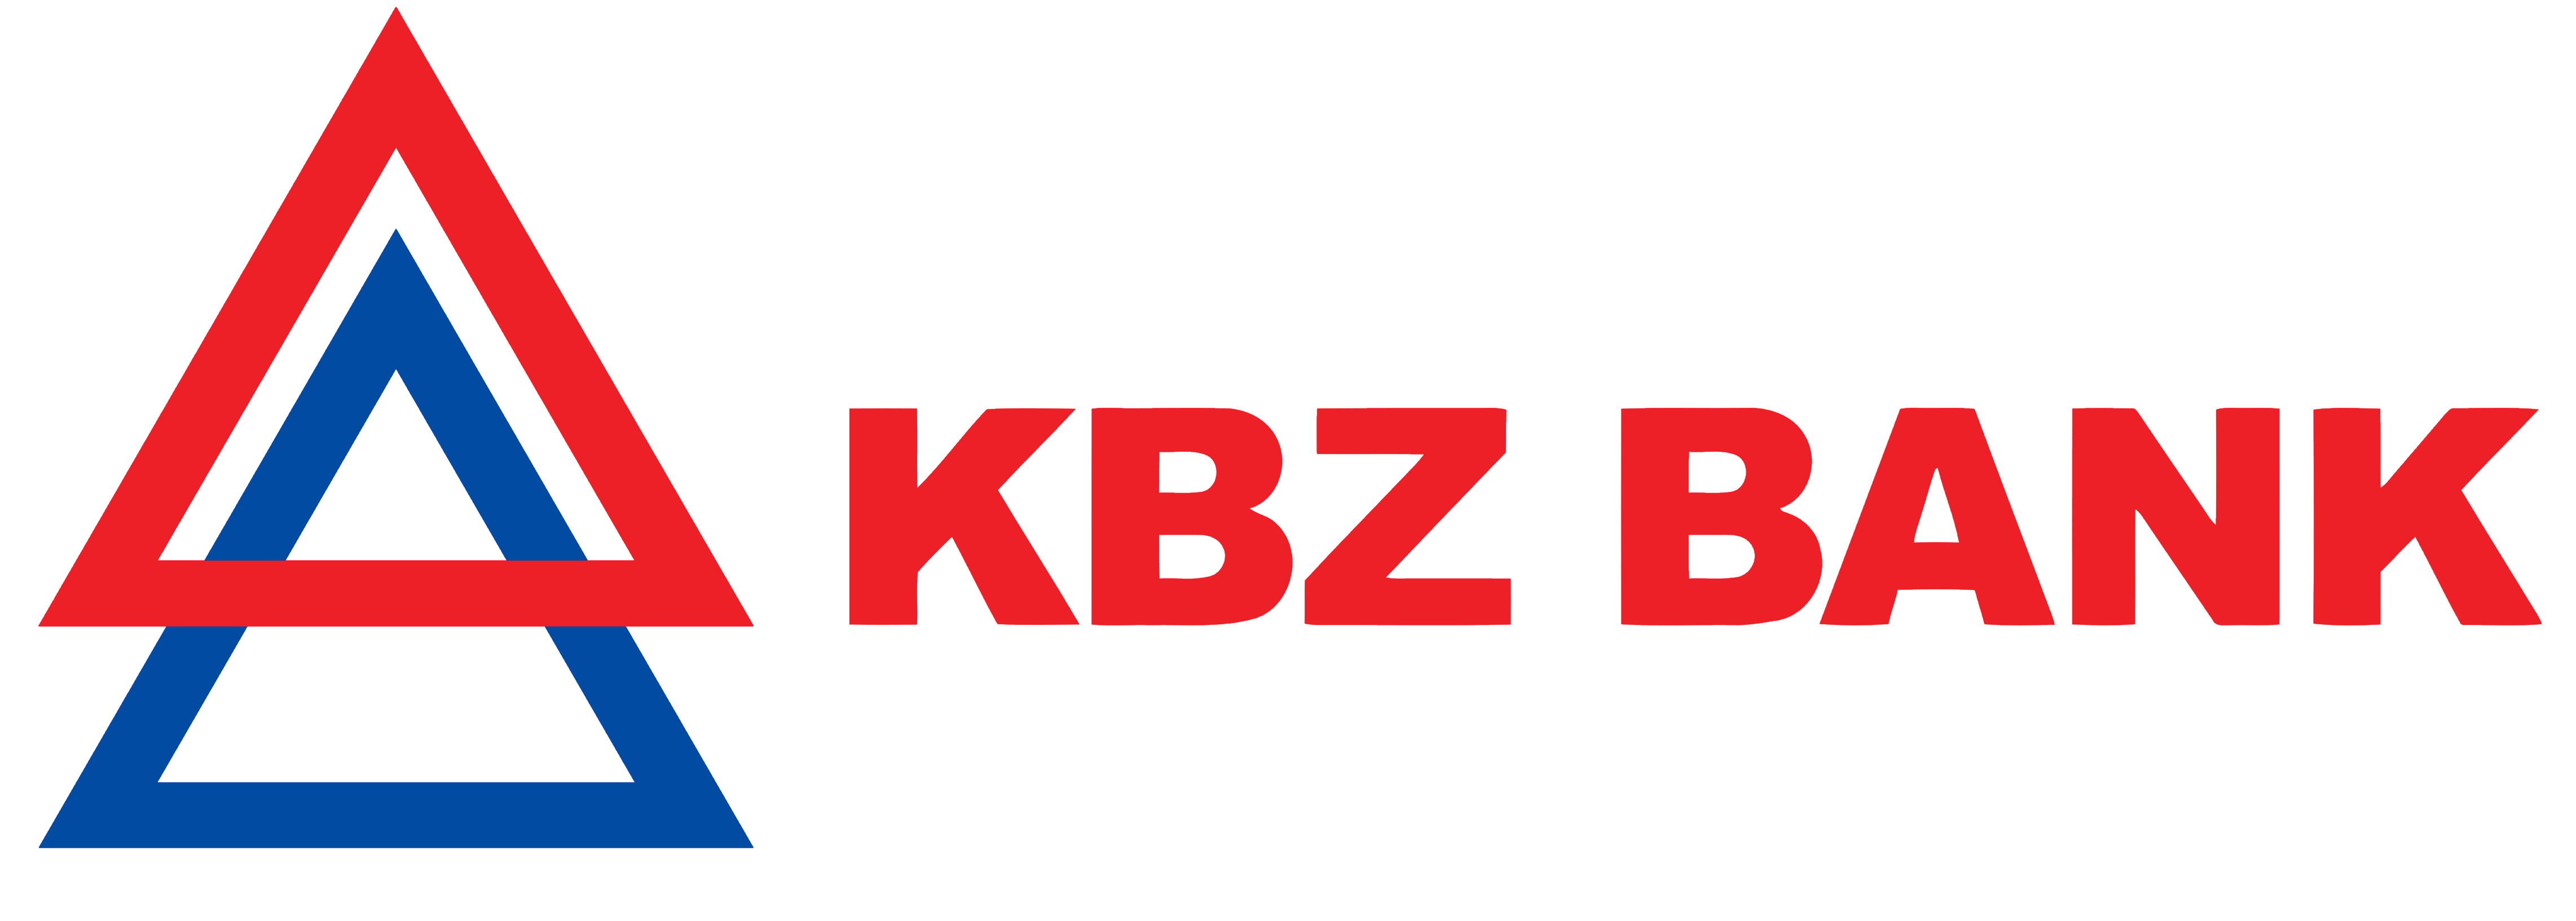 kbz-bank-logo